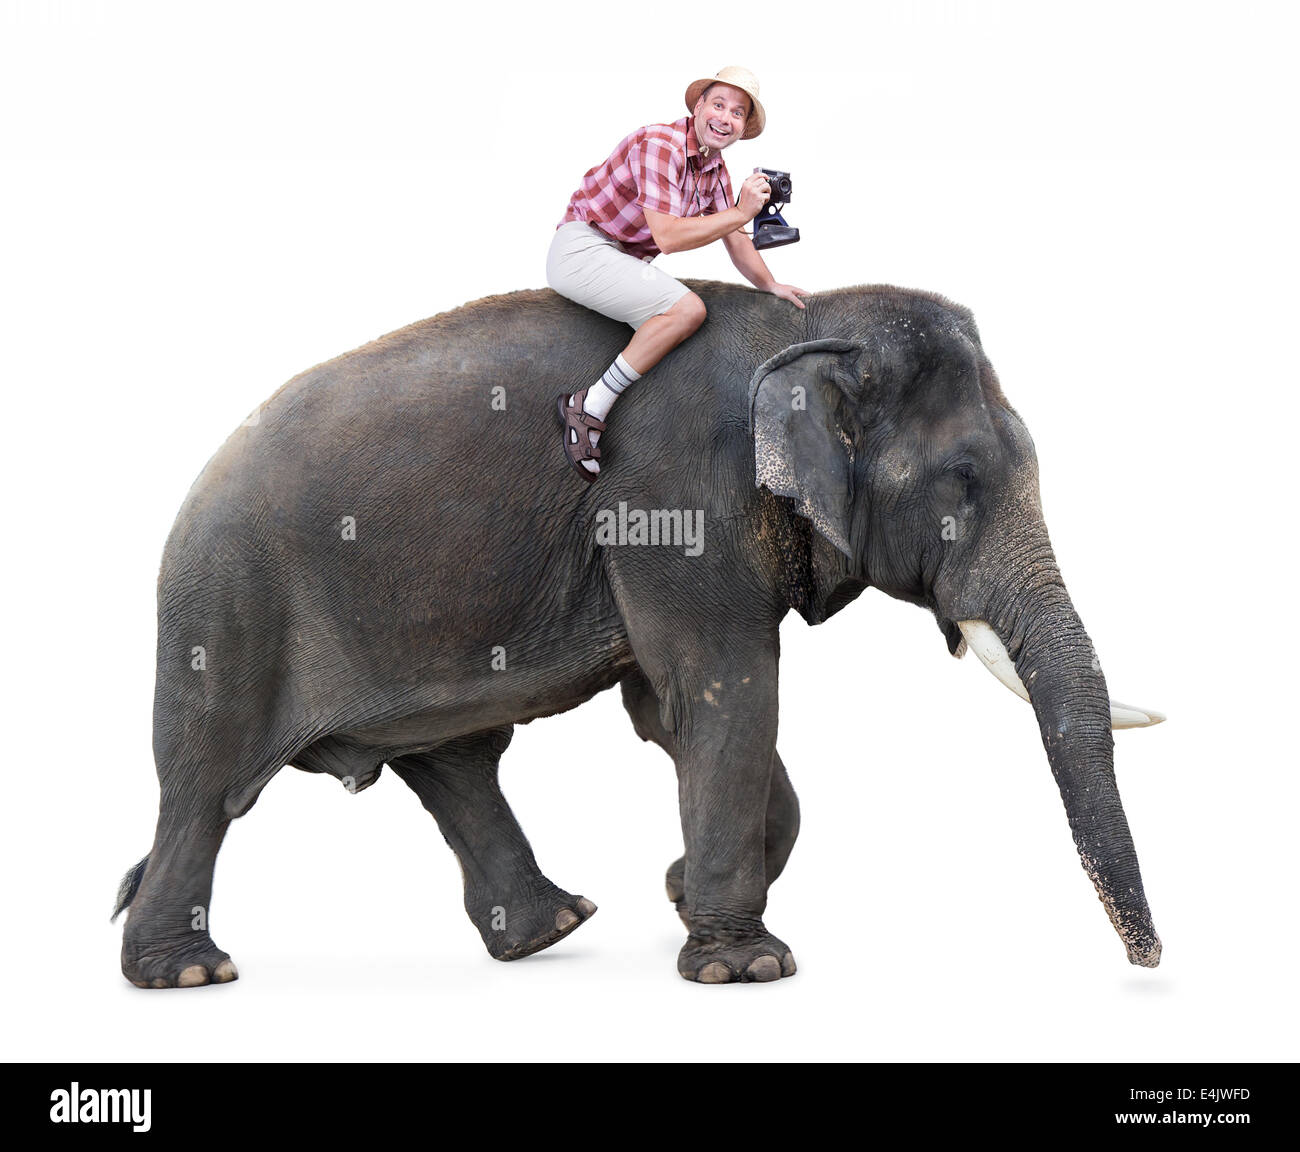 Tourisme gai se déplace sur un éléphant un appareil photo Banque D'Images